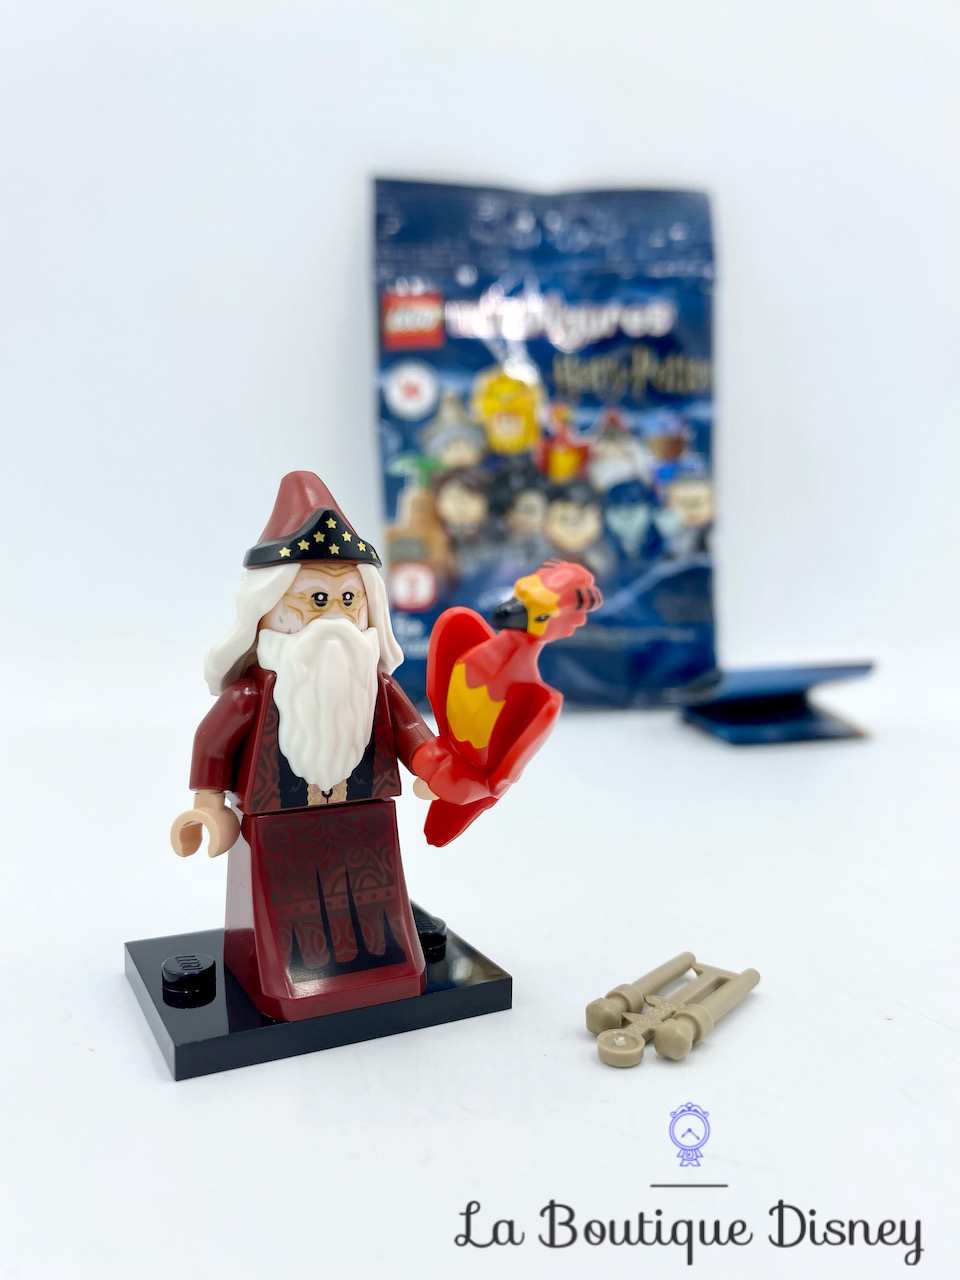 mini-figurine-lego-series-2-harry-potter-71028-albus-dumbledore-10